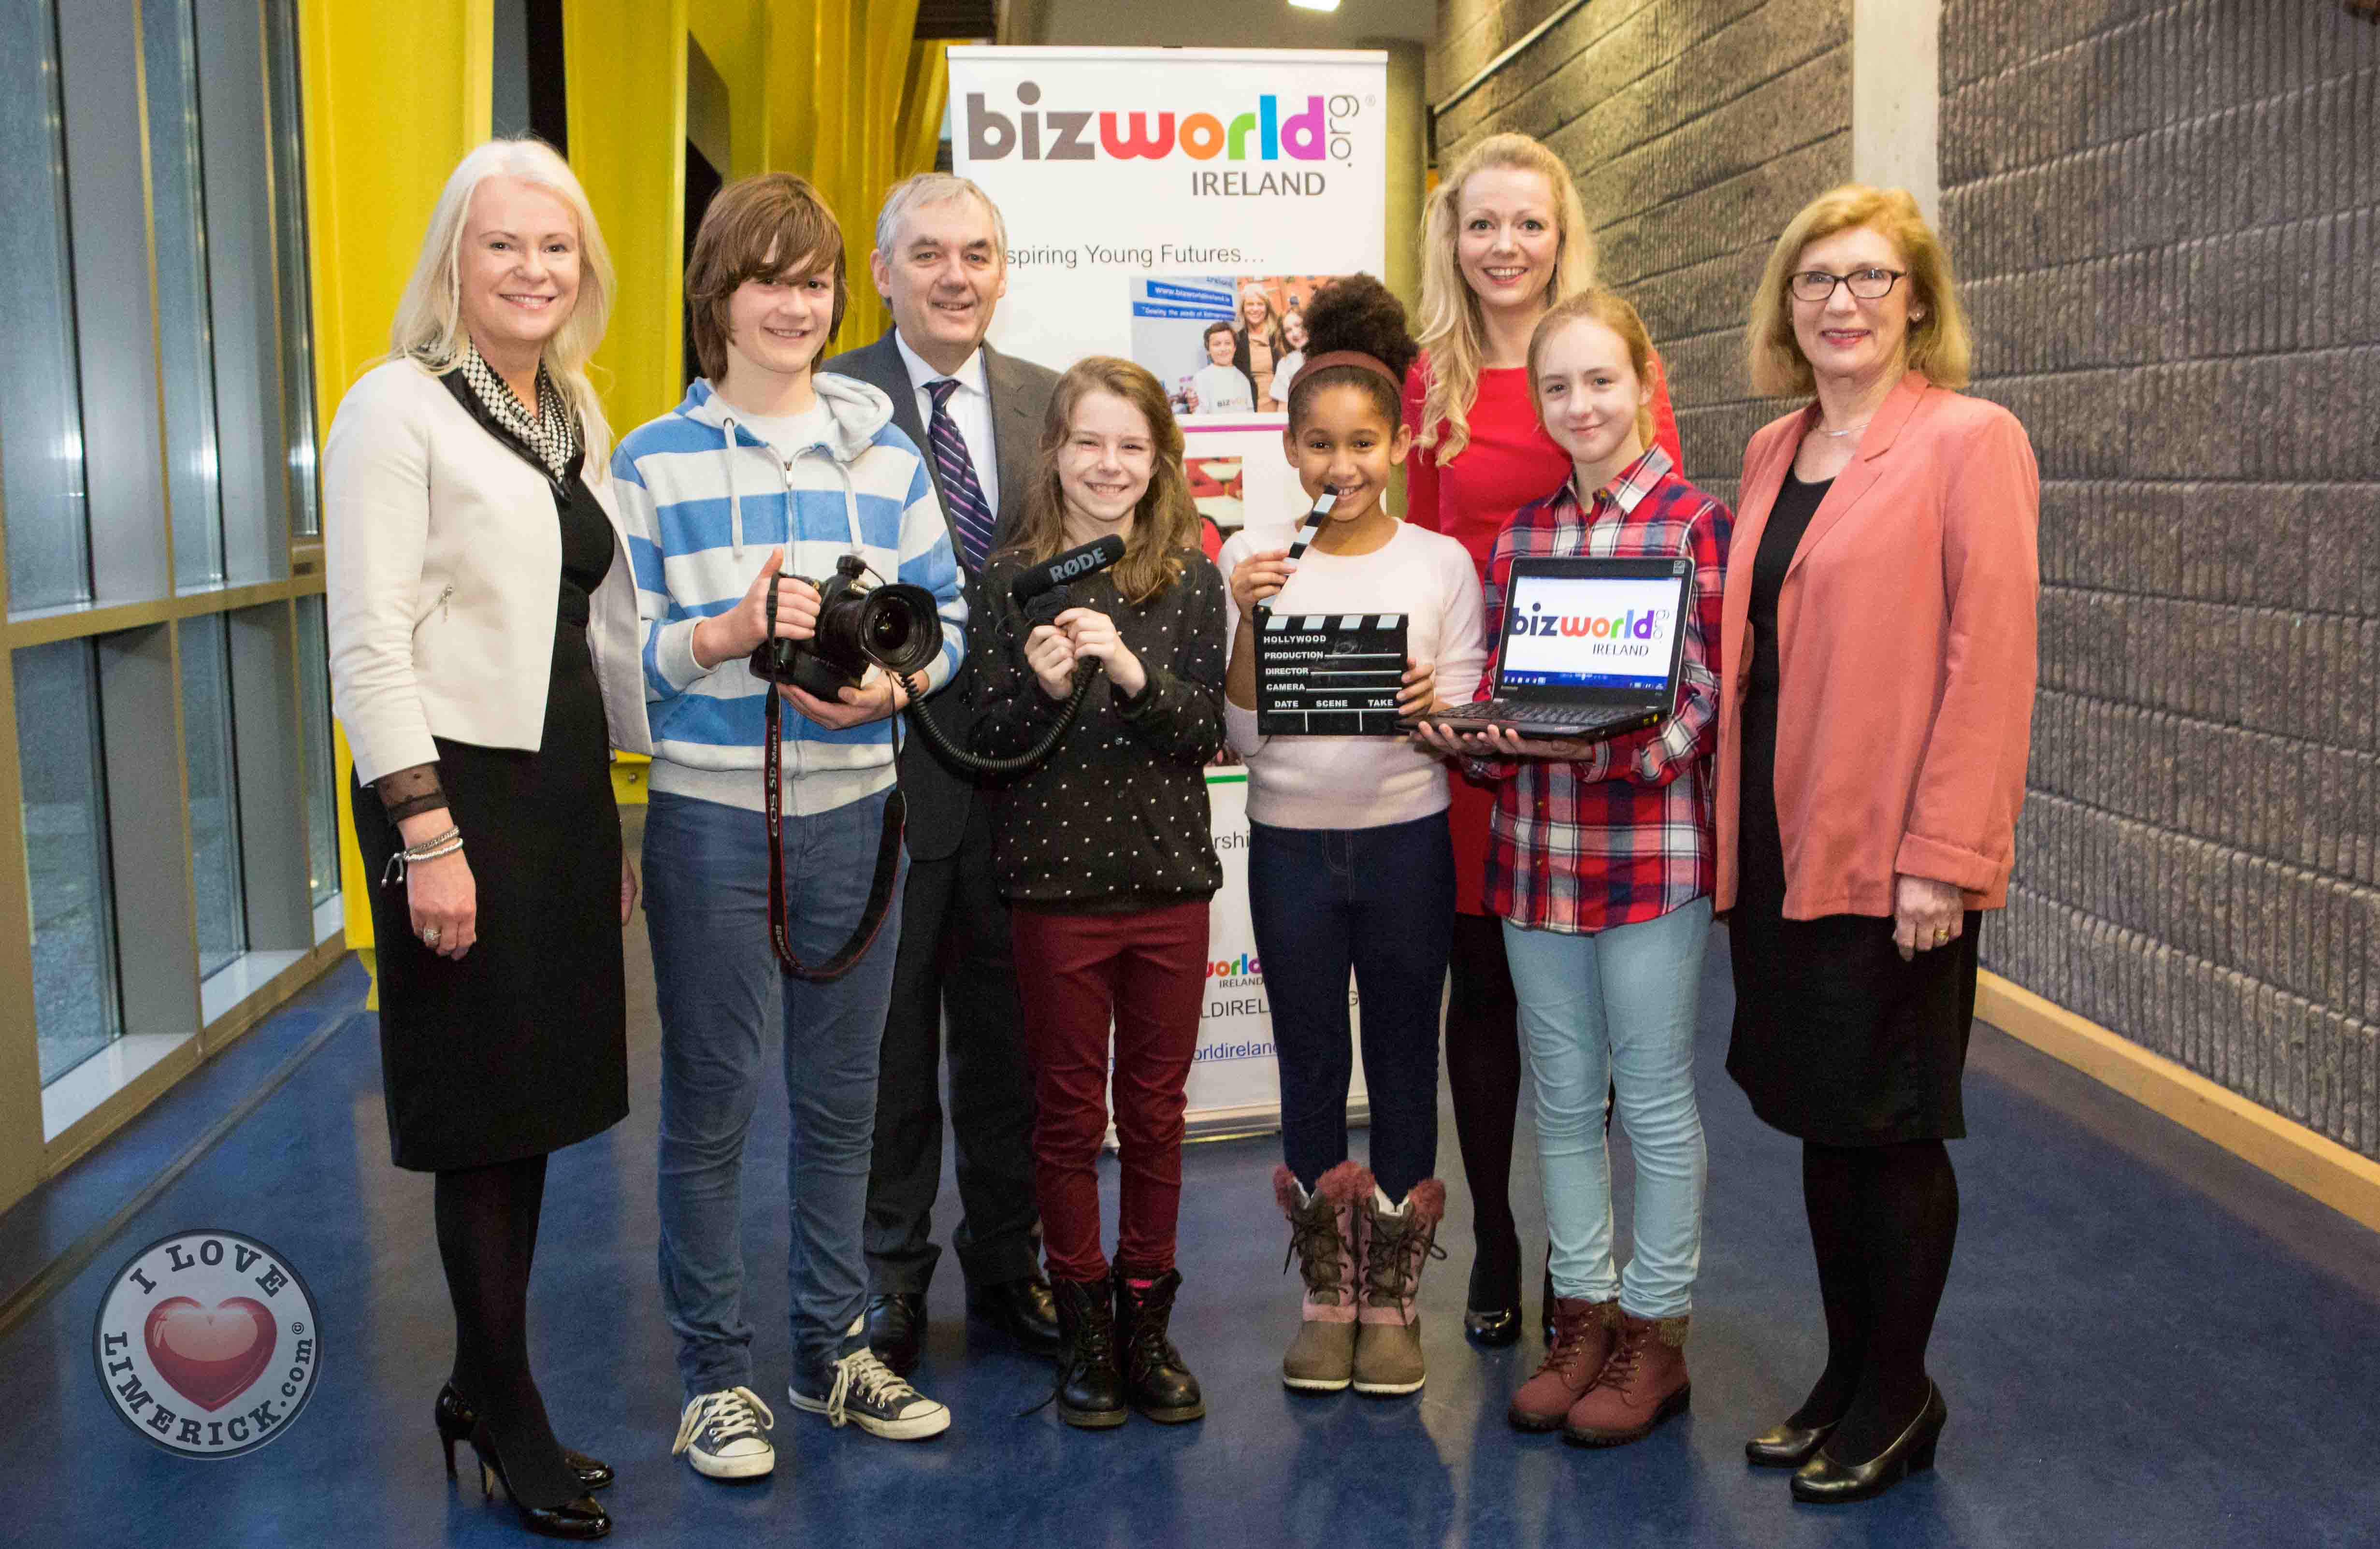 BizWorld Ireland and MIC partnership launched